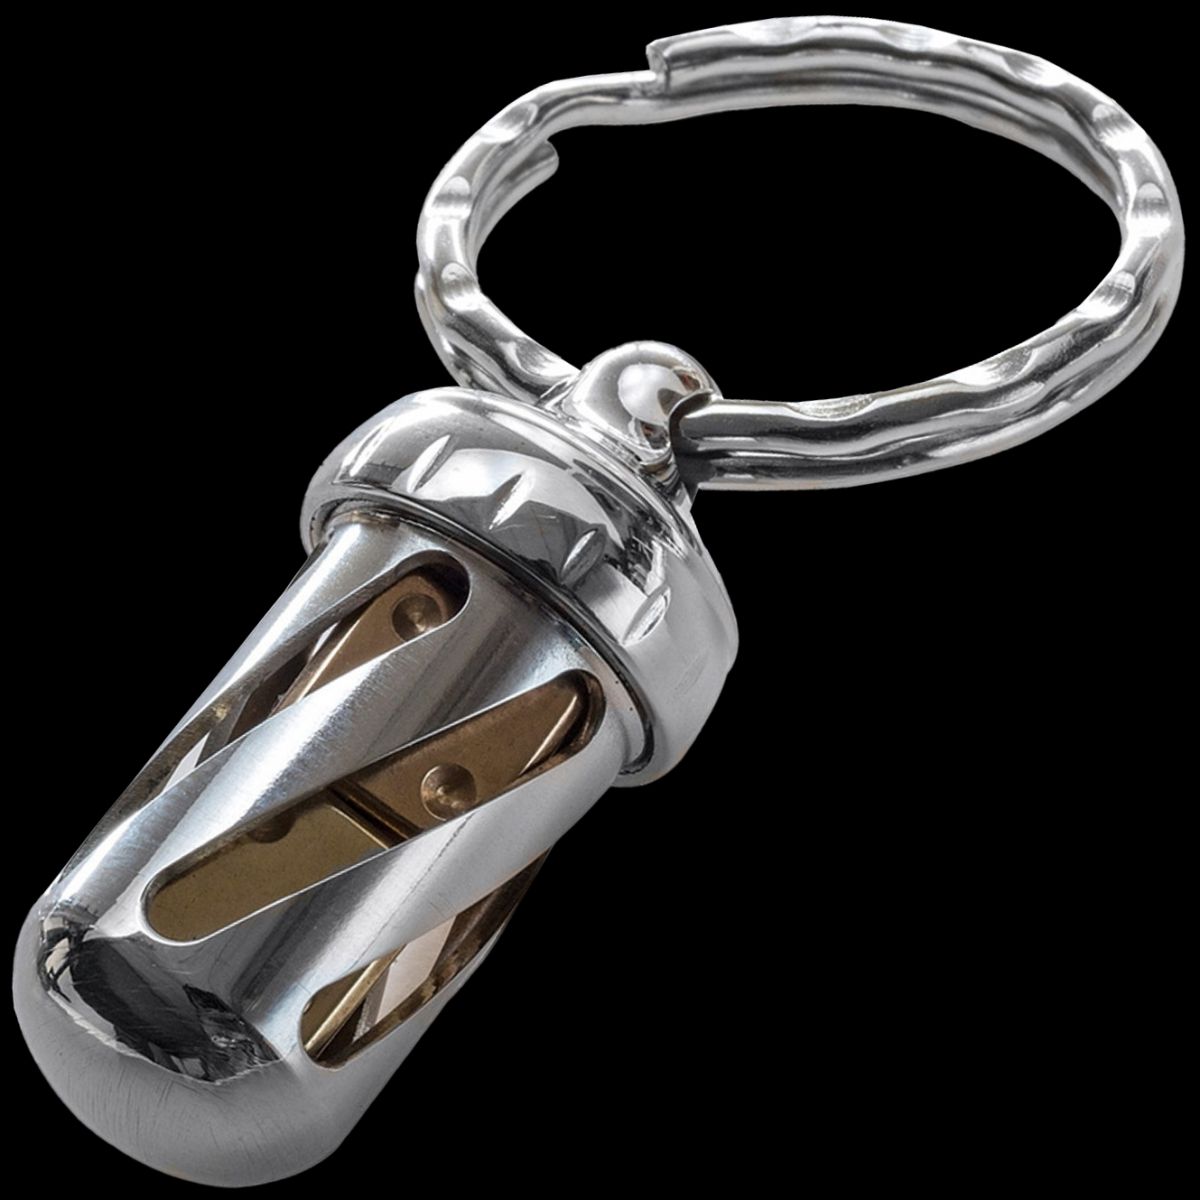 LionSteel AcornDice Steel key ring, stainless steel dice